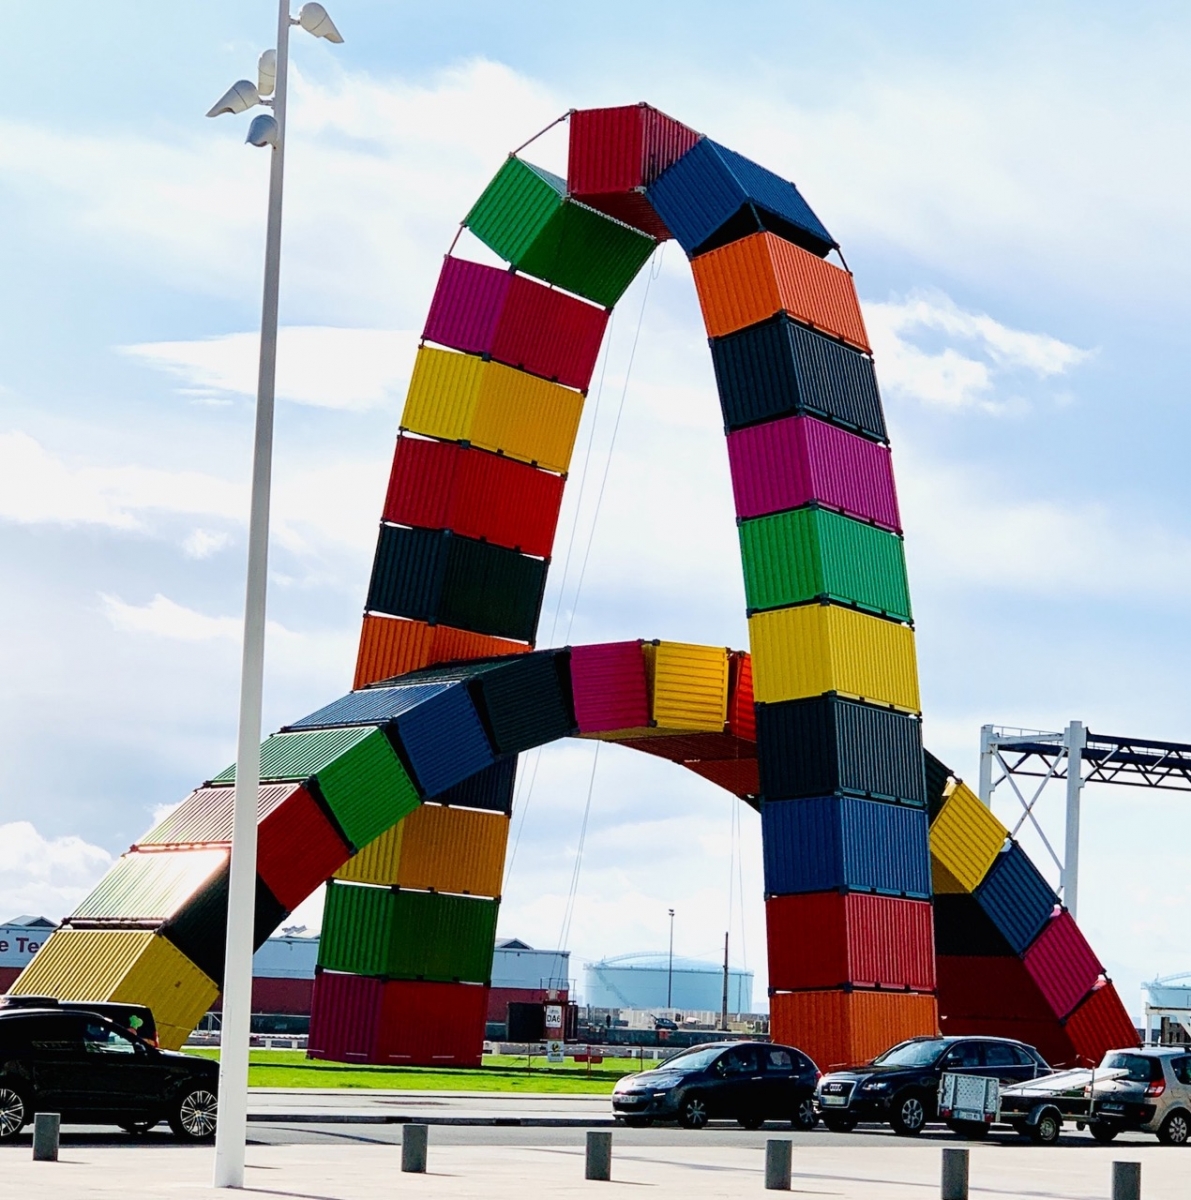 La « Catène des conteneurs » est une installation artistique d'arcs de conteneurs au Havre, en France.